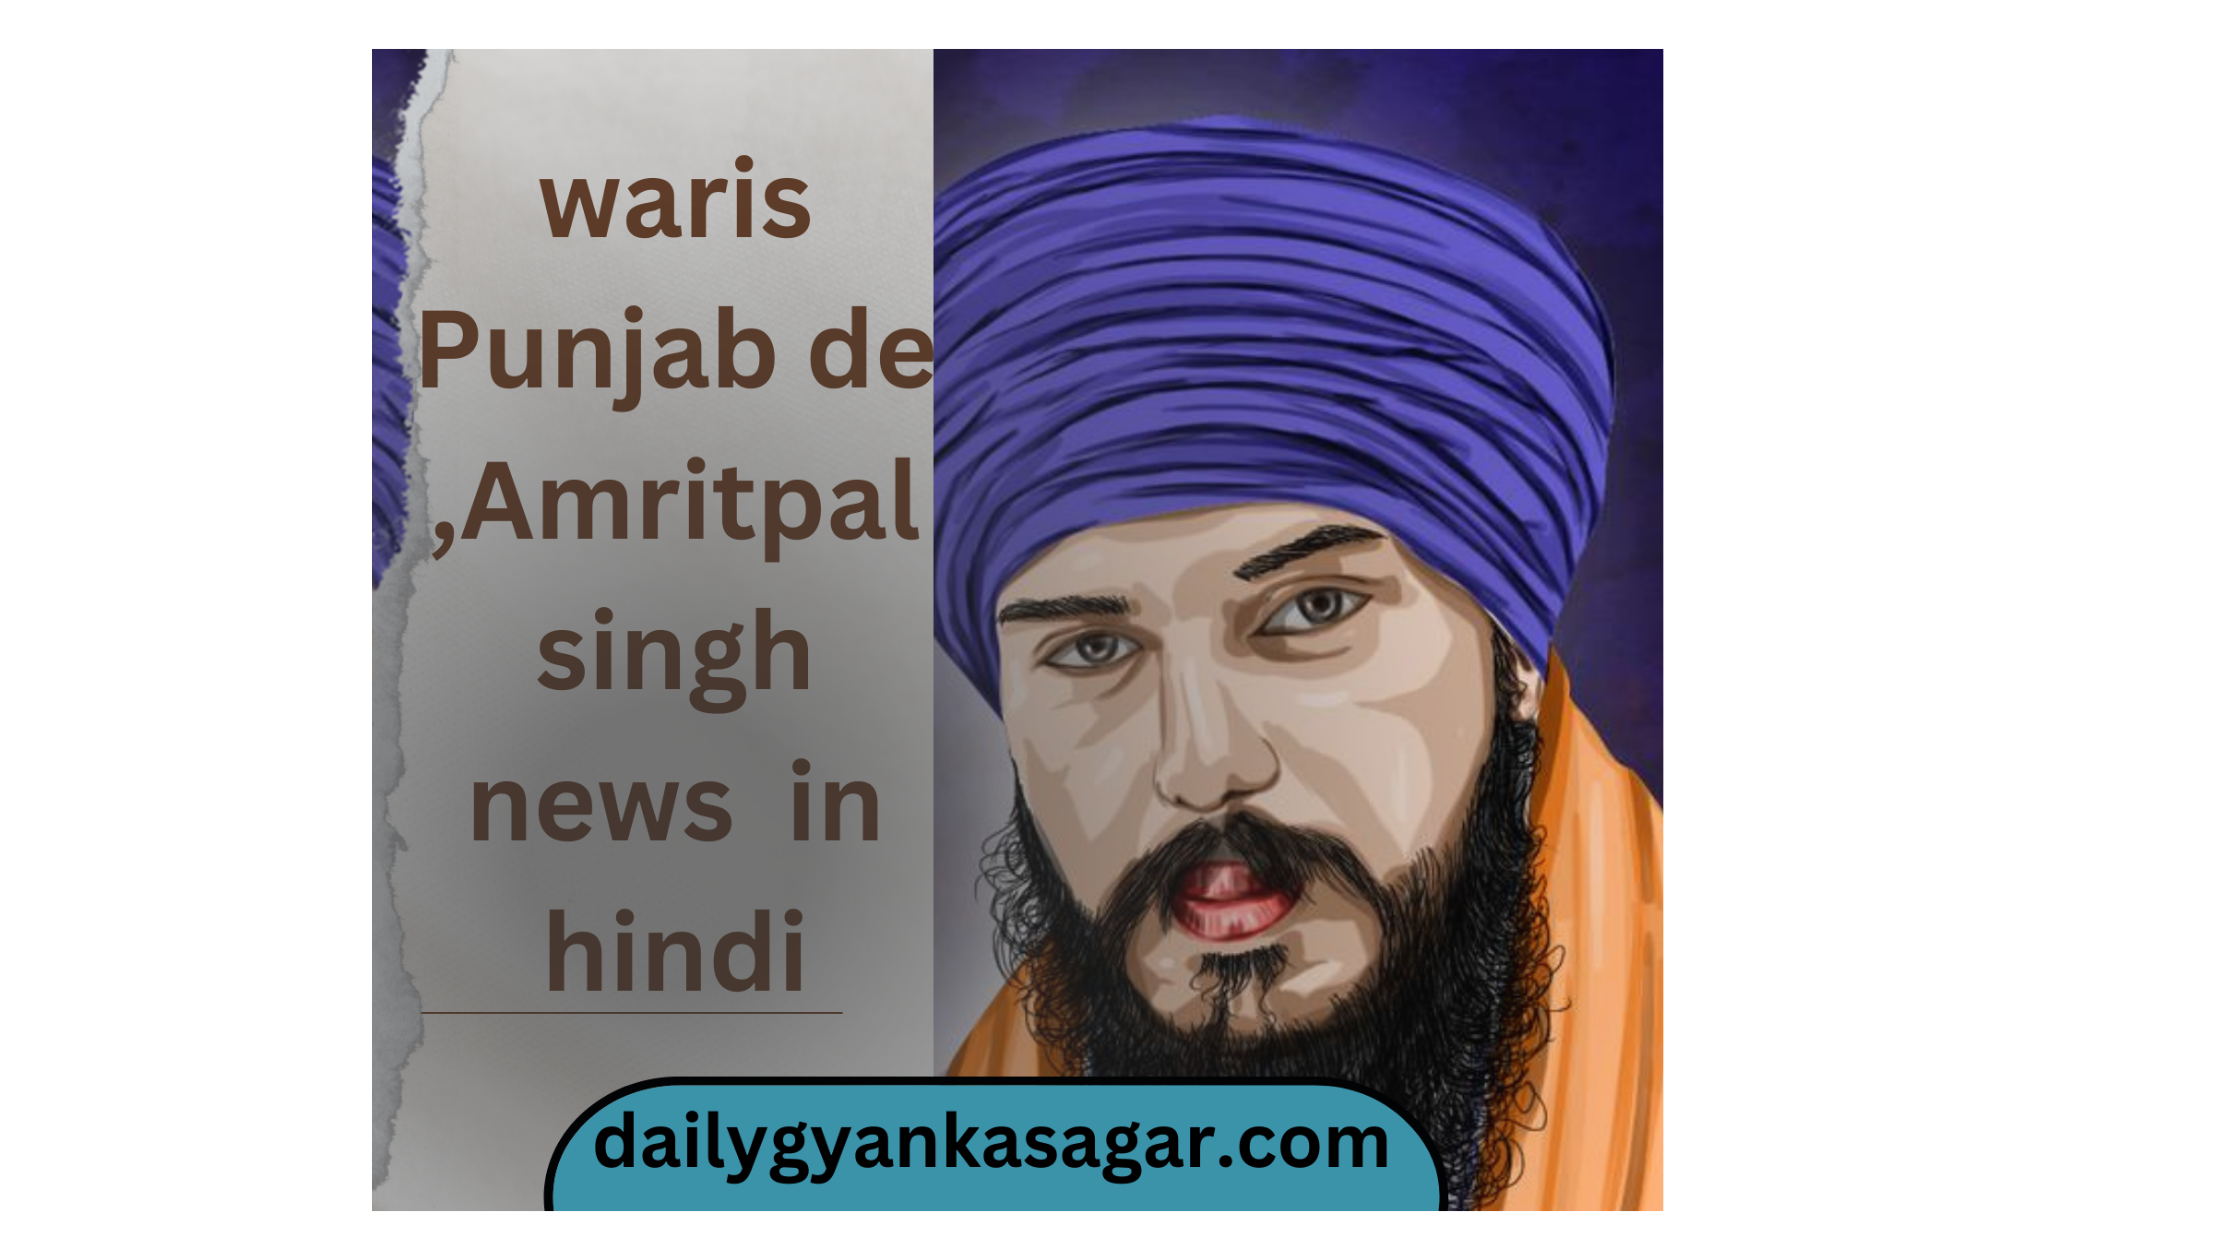 Waris Punjab de, Amritpal singh news in Hindi